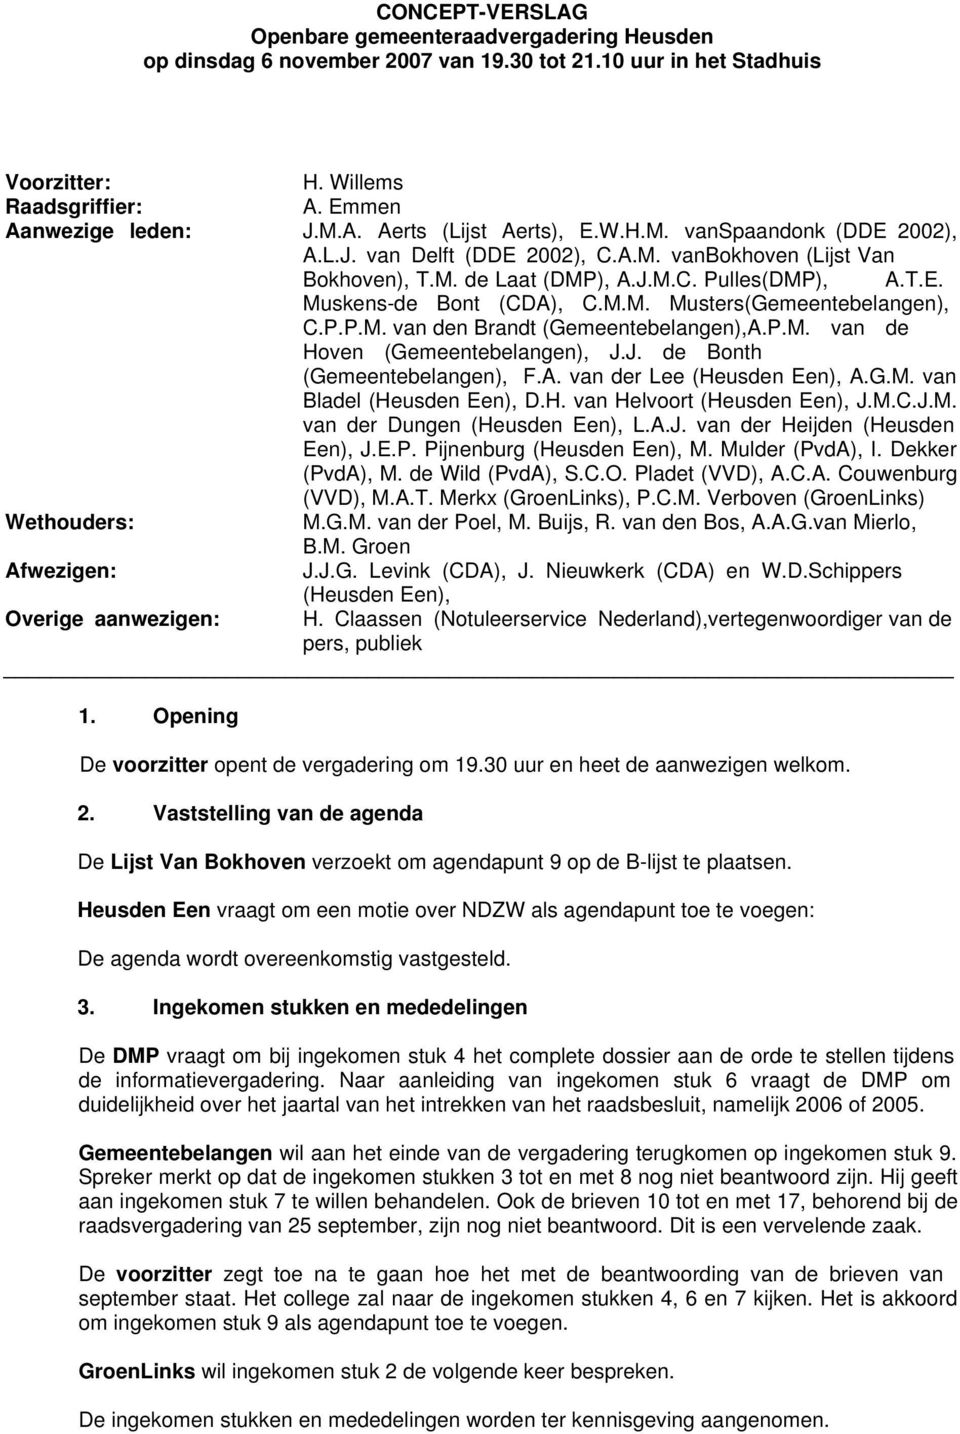 P.P.M. van den Brandt (Gemeentebelangen),A.P.M. van de Hoven (Gemeentebelangen), J.J. de Bonth (Gemeentebelangen), F.A. van der Lee (Heusden Een), A.G.M. van Bladel (Heusden Een), D.H. van Helvoort (Heusden Een), J.